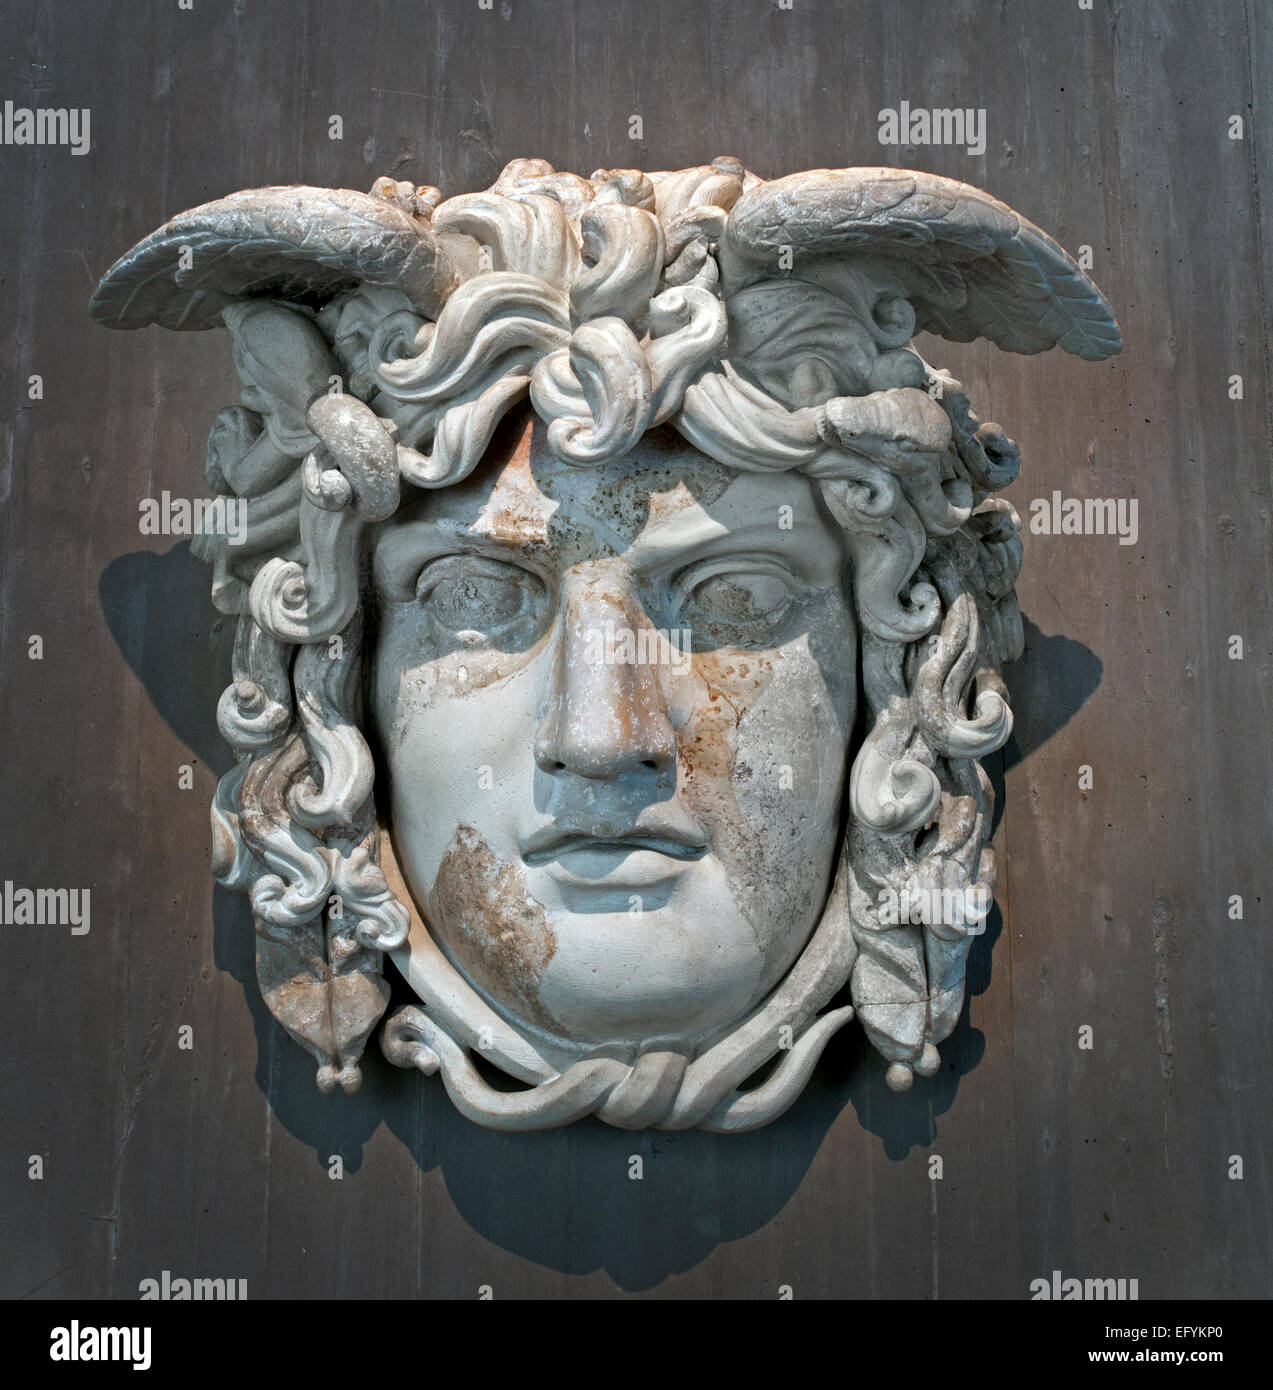 Masque de la Gorgone Méduse, ca AD 130 Musée Romain Germanique Cologne Allemagne Banque D'Images